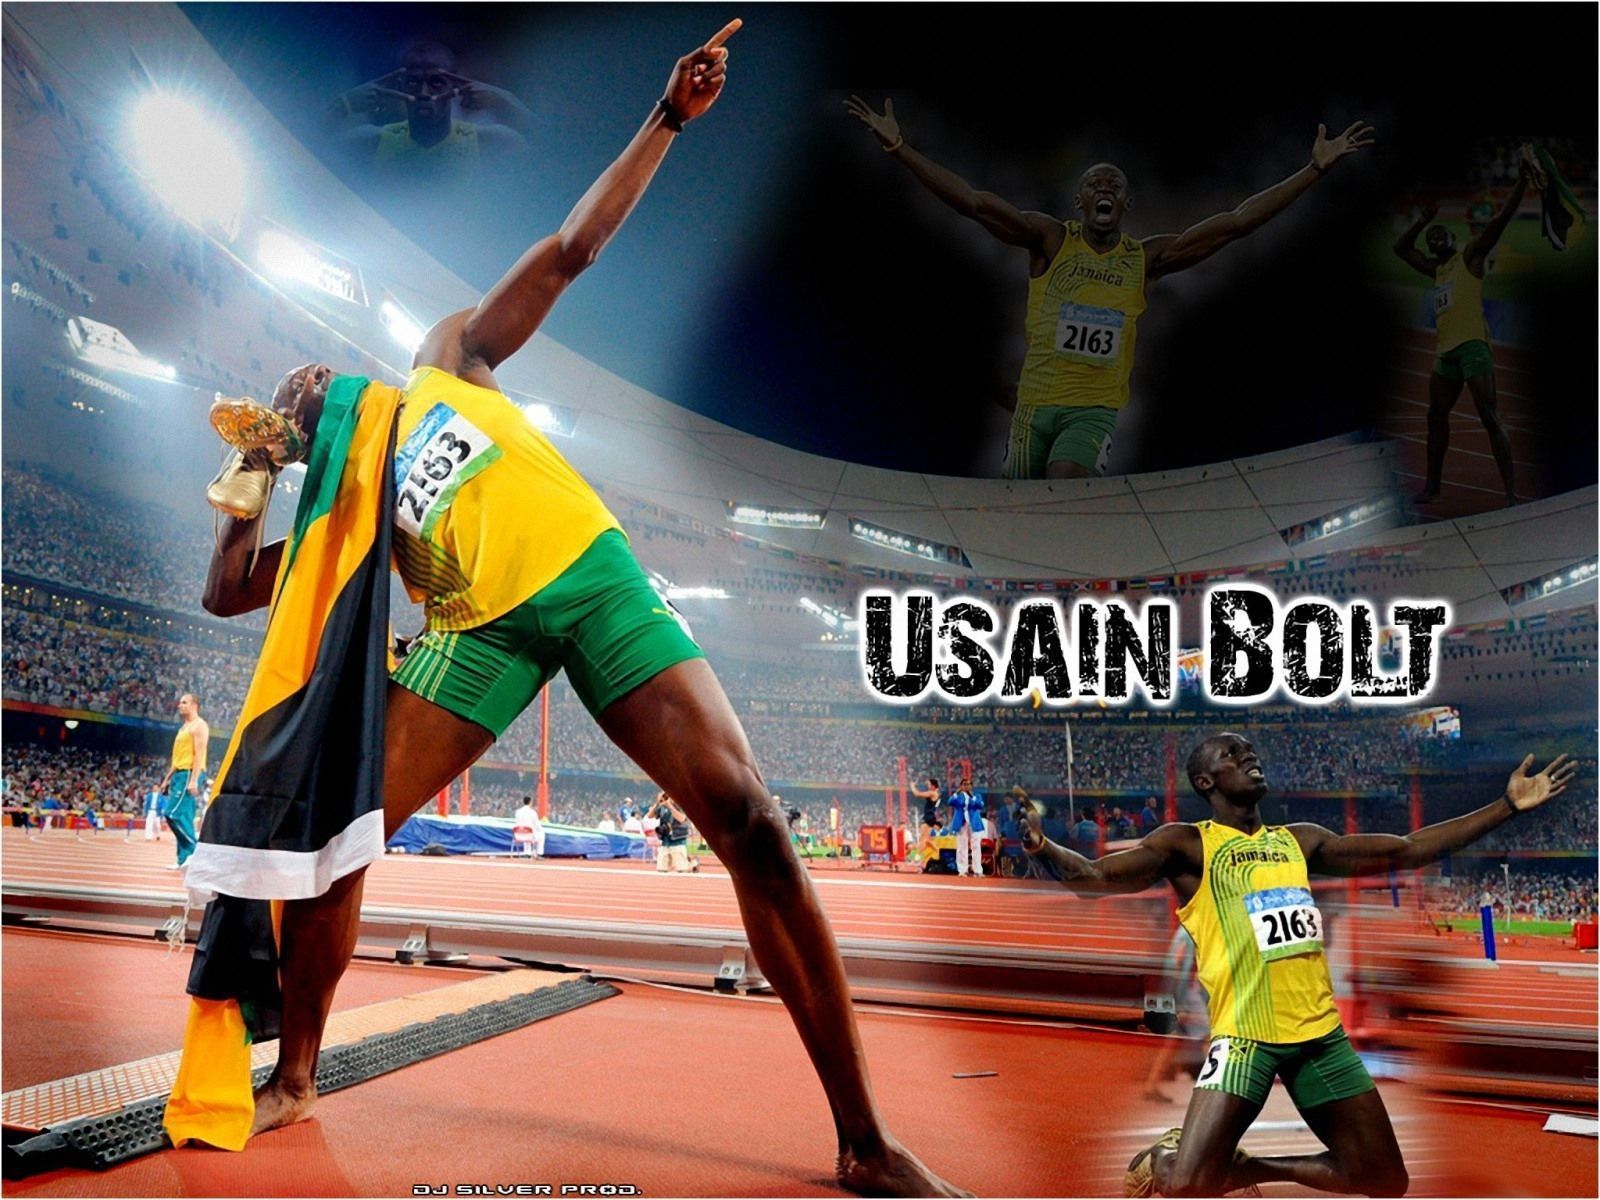 Usain Bolt wallpaper 1600x1200 Wallpapers, 1600x1200 Wallpapers